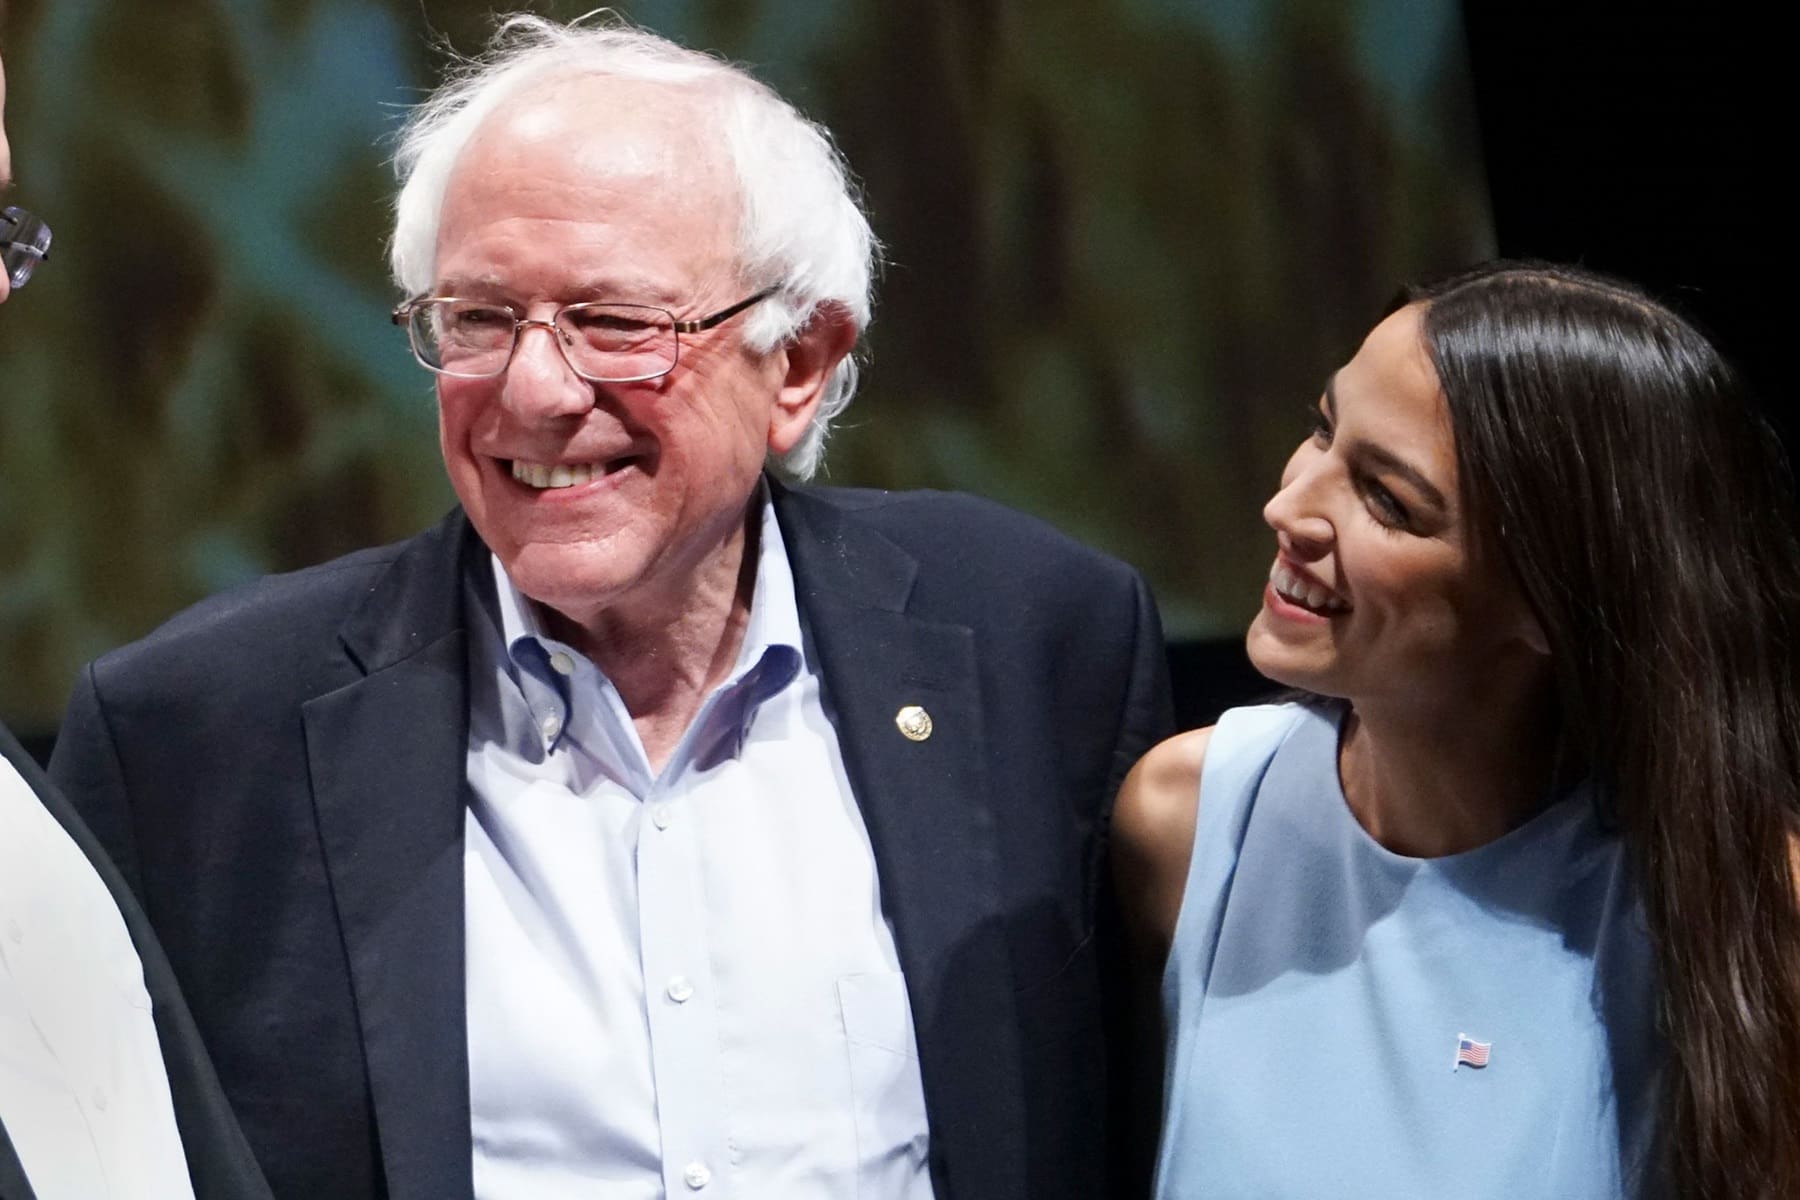 Bernie Sanders Alexandra Ocasio-Cortez Endorsement